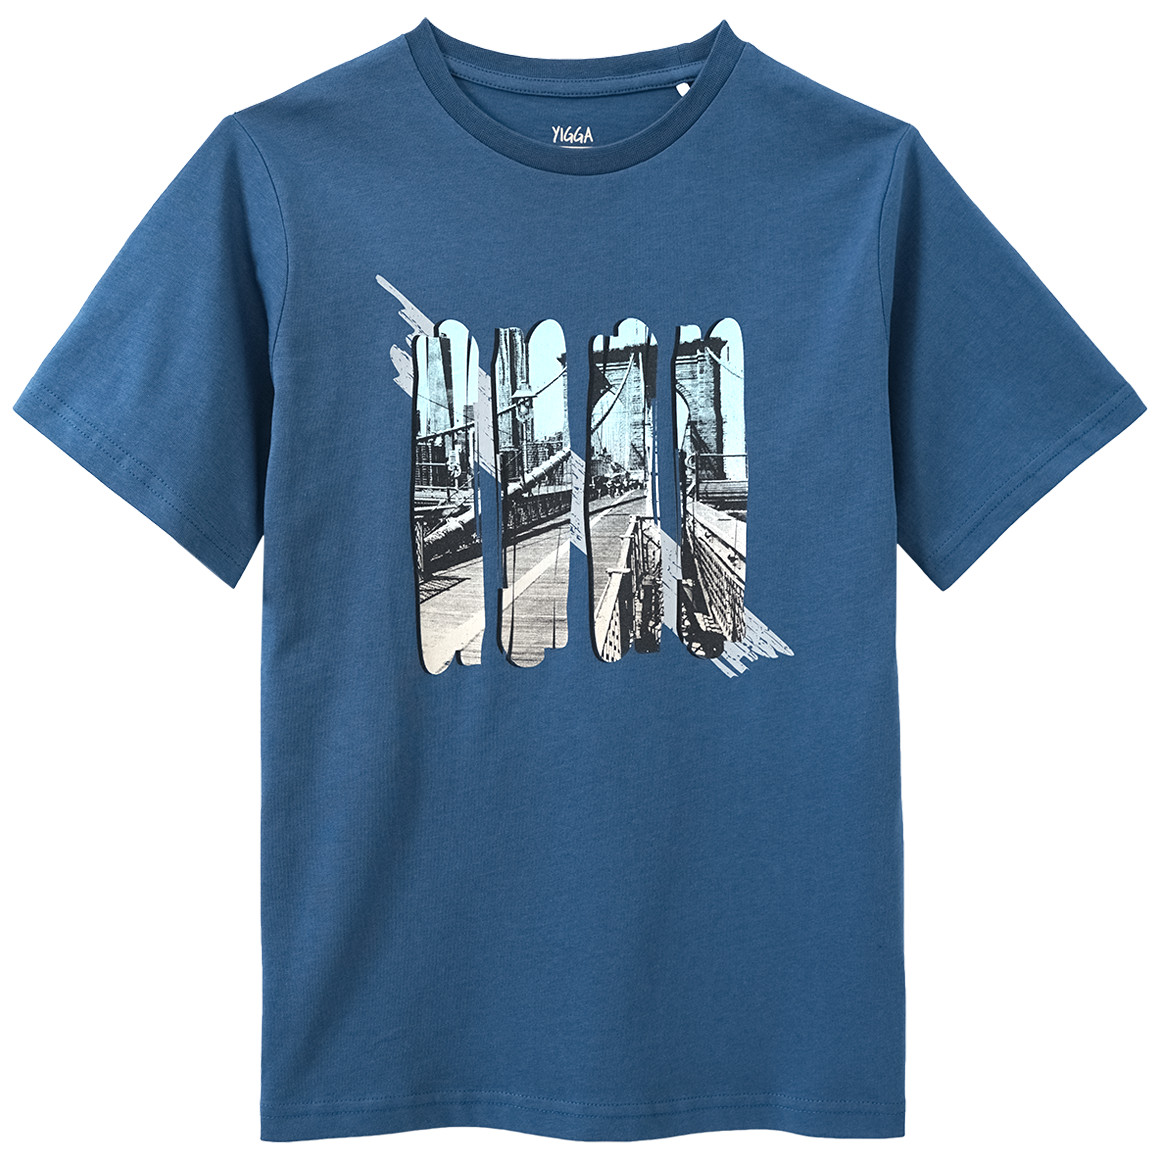 Jungen T-Shirt mit City-Print von Yigga